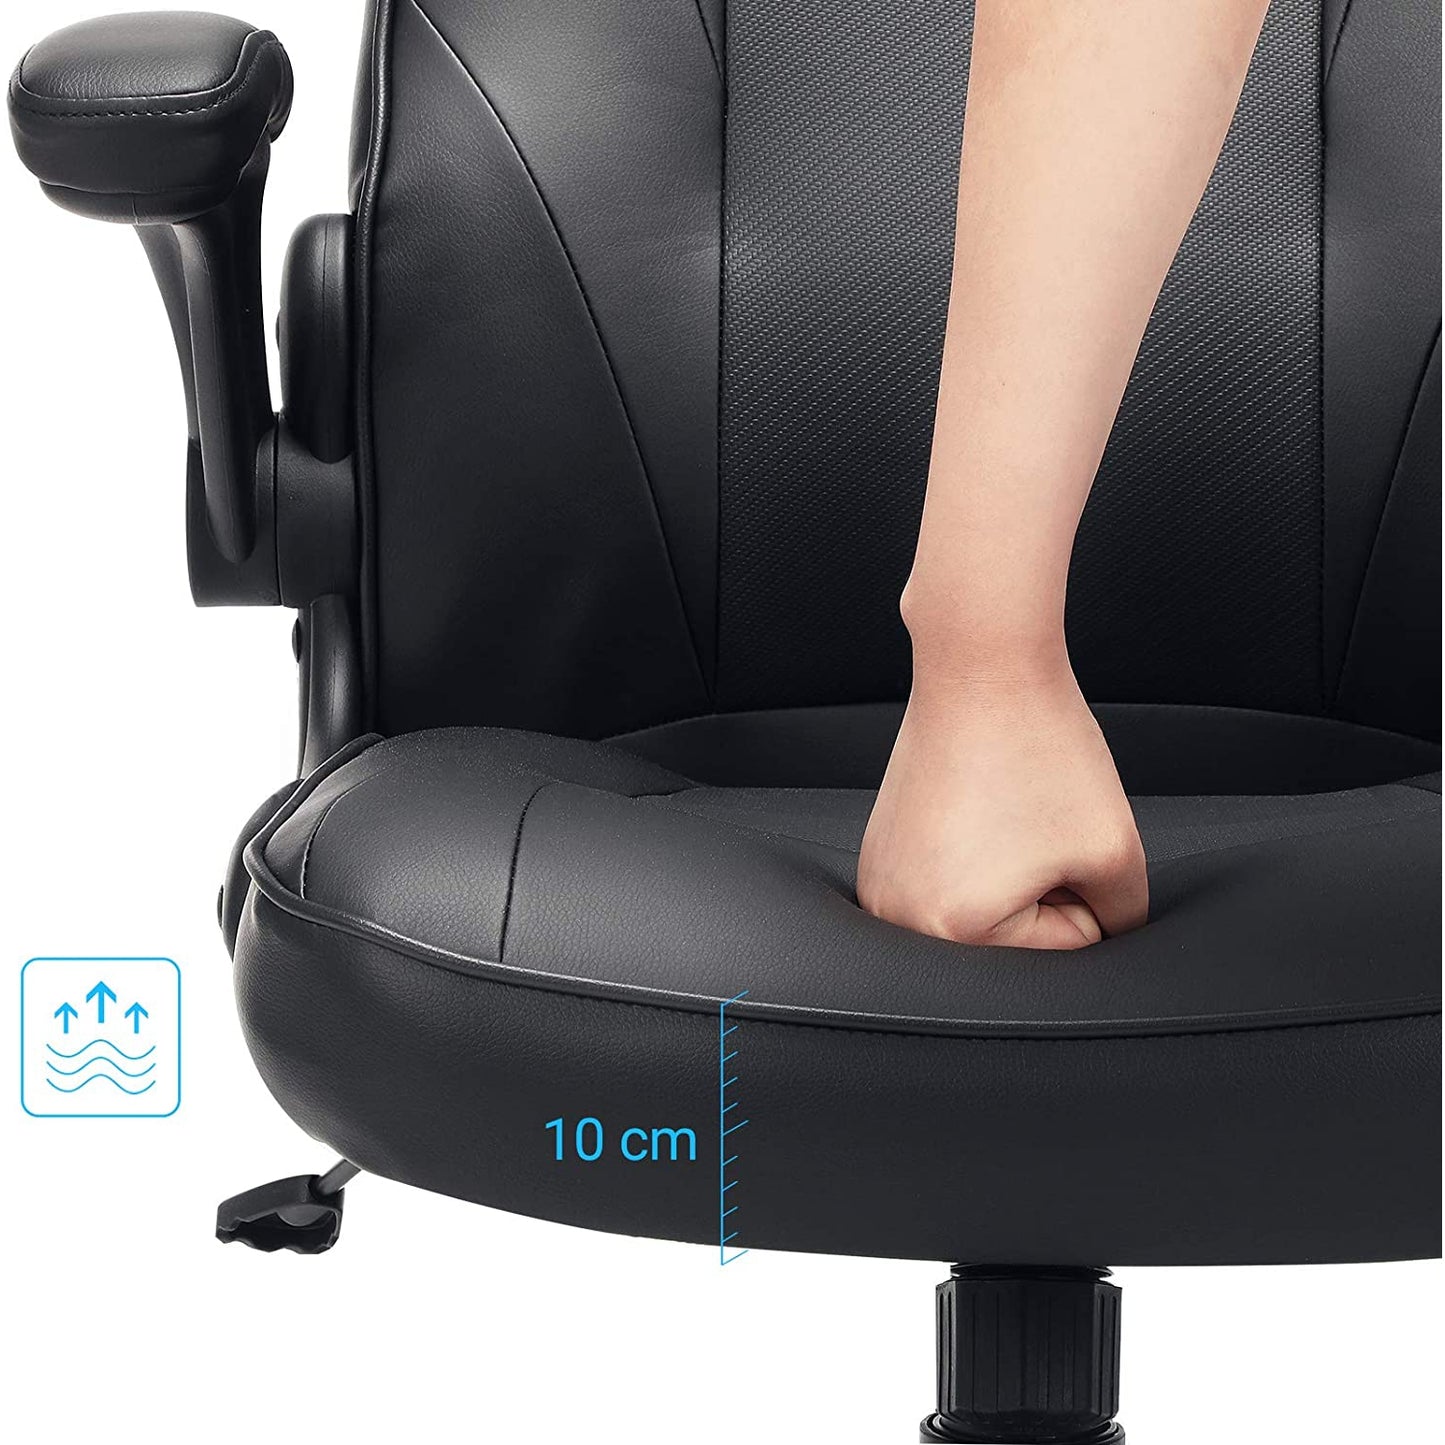 Chaise de bureau Nancy's Bathgate - Chaise de bureau ergonomique - Chaise de bureau pour adultes - Noir - 75 x 64 x (110-120) cm (L x L x H)